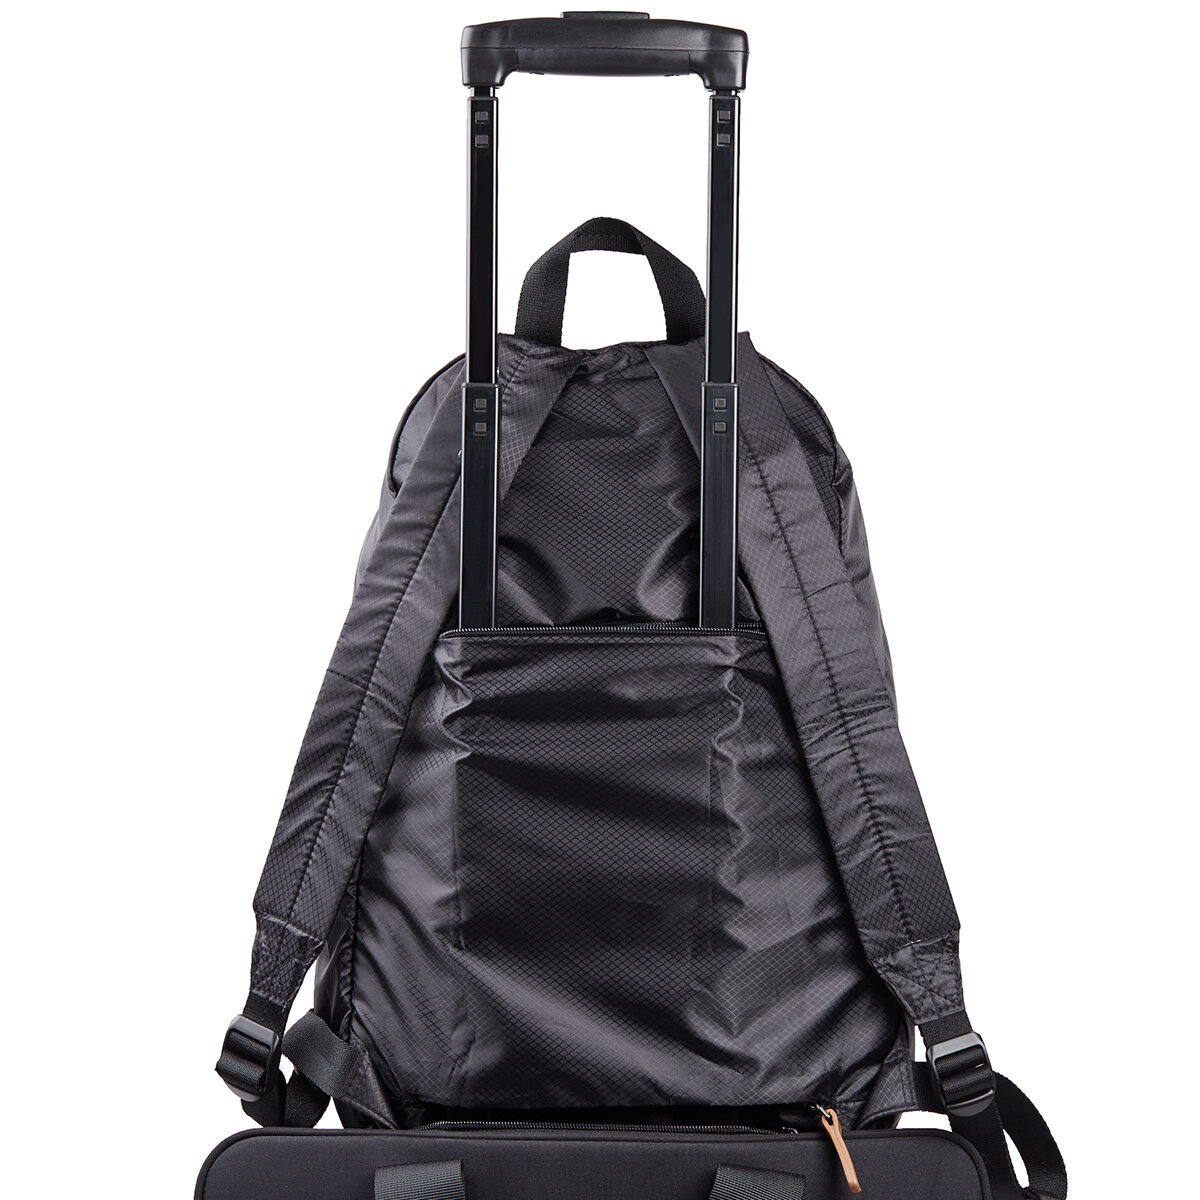 Plecak Lexon LN2311NN Packable czarny widok tył plecaka zamontwanego na walizkę